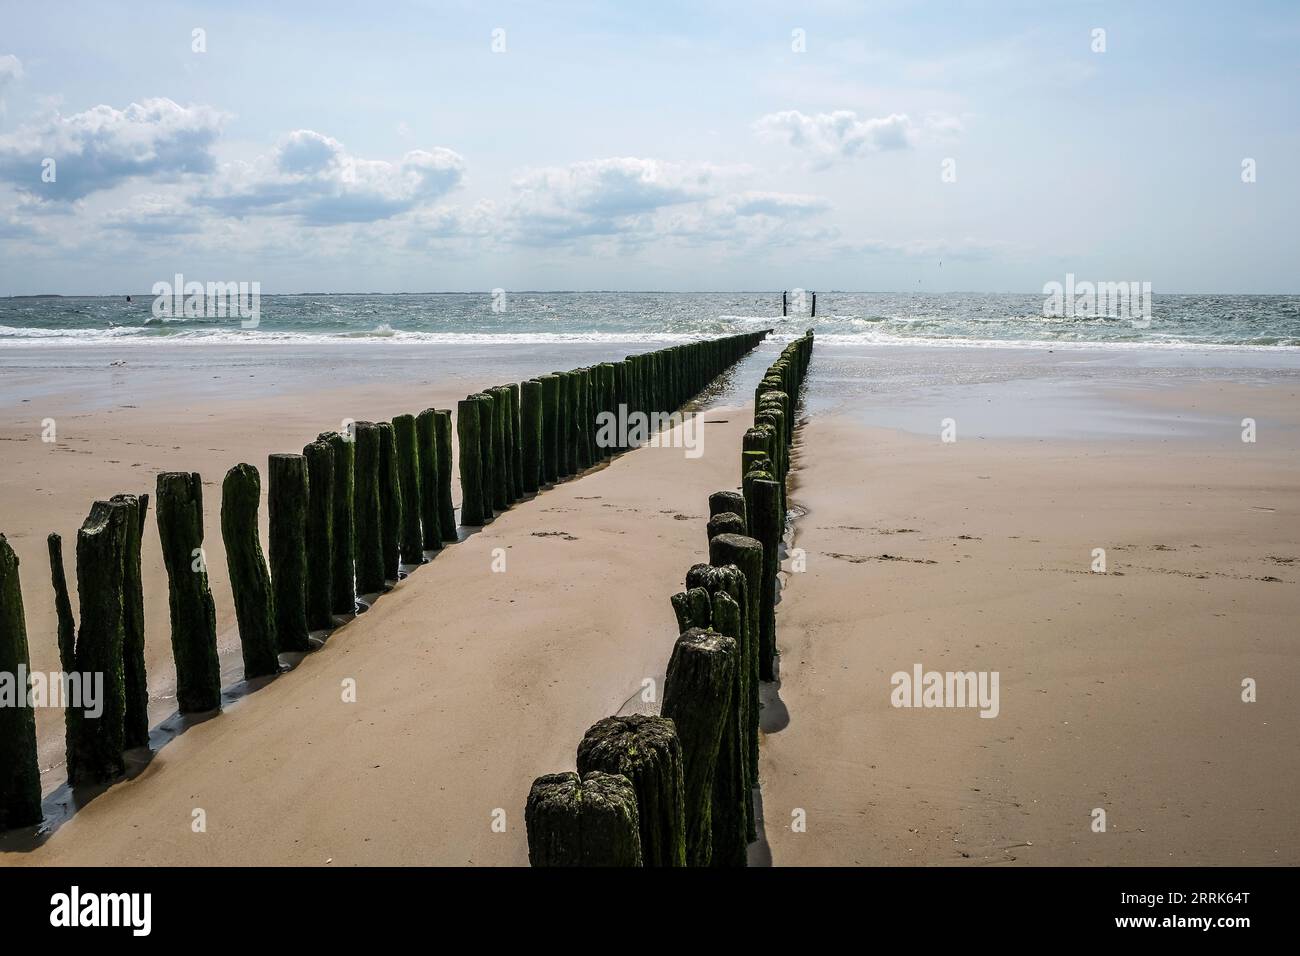 Vlissingen, Zeeland, Niederlande - Sandstrand mit Holzbächen, Hafenstadt an der Südküste der Halbinsel Walcheren in der niederländischen Provinz Zeeland. Stockfoto